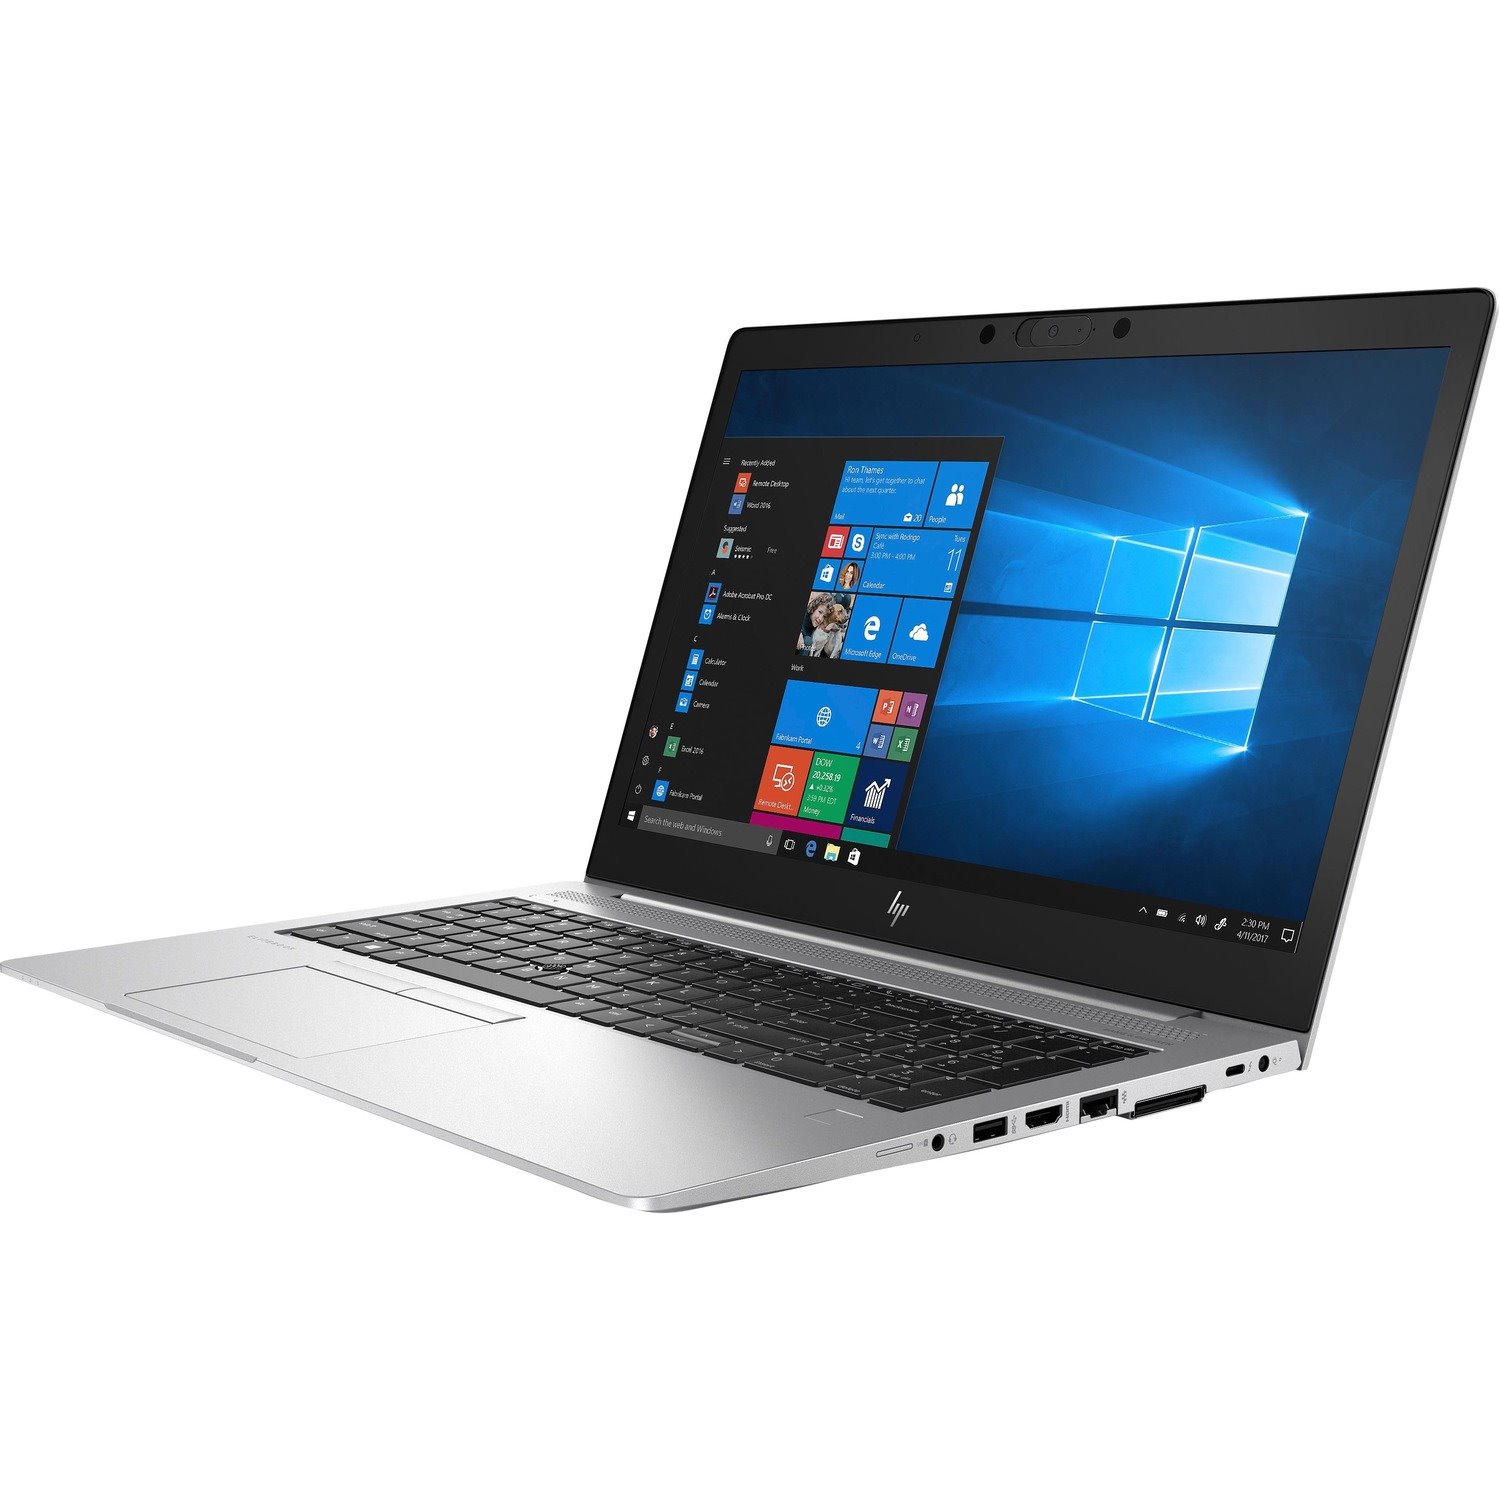 HP EliteBook 850 G6 39.6 cm (15.6") Notebook - 1920 x 1080 - Intel Core i5 8th Gen i5-8365U Quad-core (4 Core) 1.60 GHz - 8 GB Total RAM - 256 GB SSD